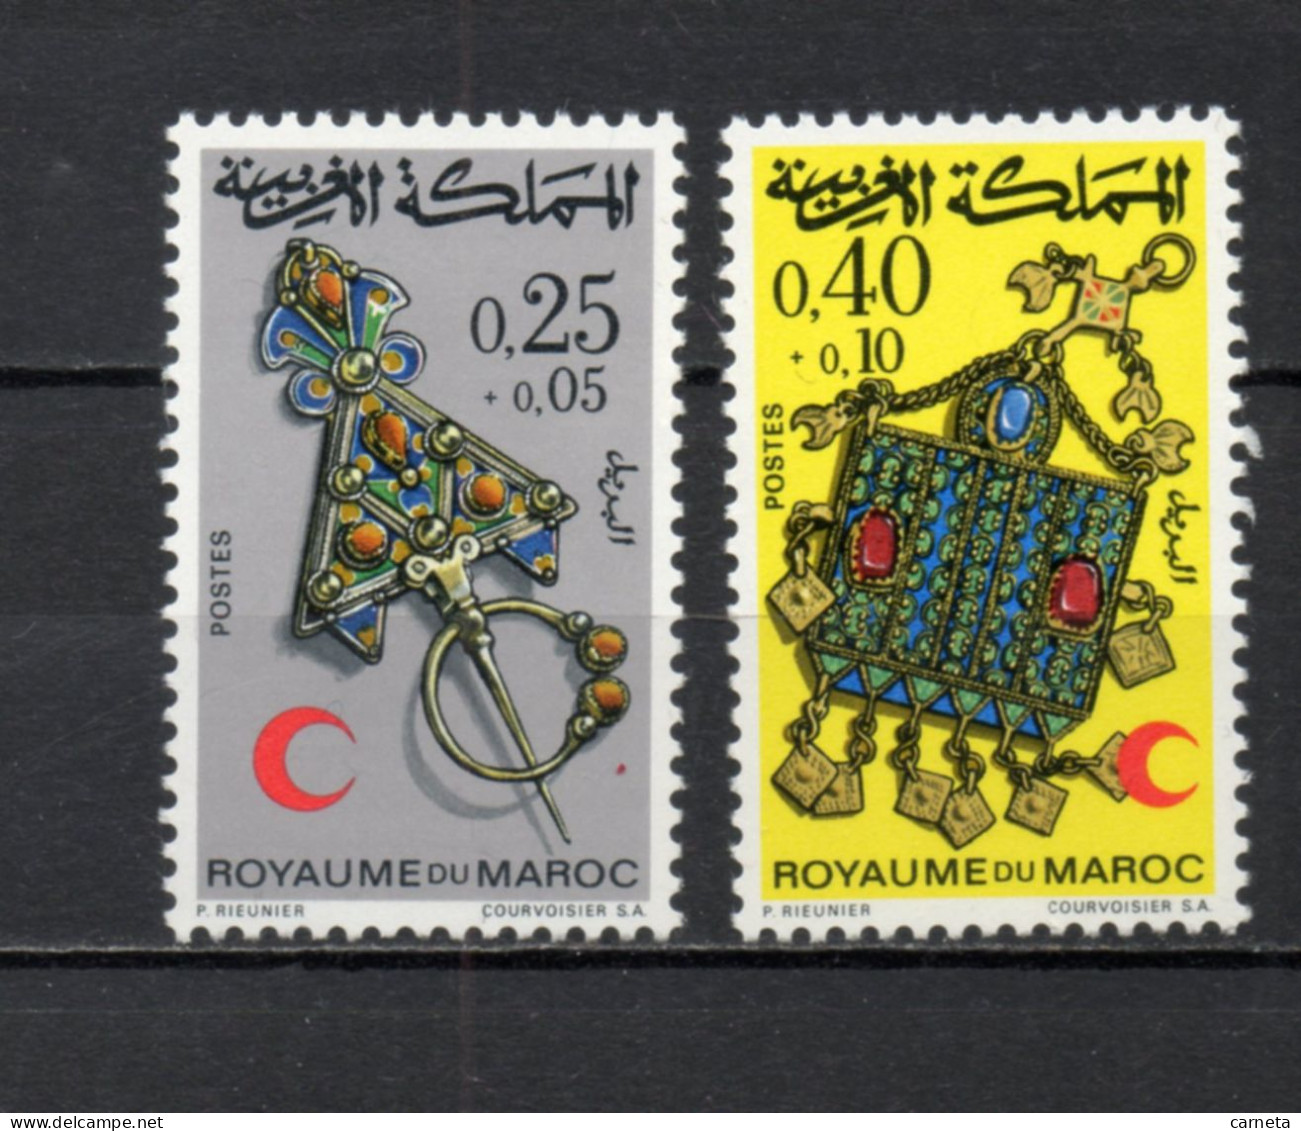 MAROC N°  616 + 617     NEUFS SANS CHARNIERE  COTE 4.05€    CROISSANT ROUGE - Morocco (1956-...)